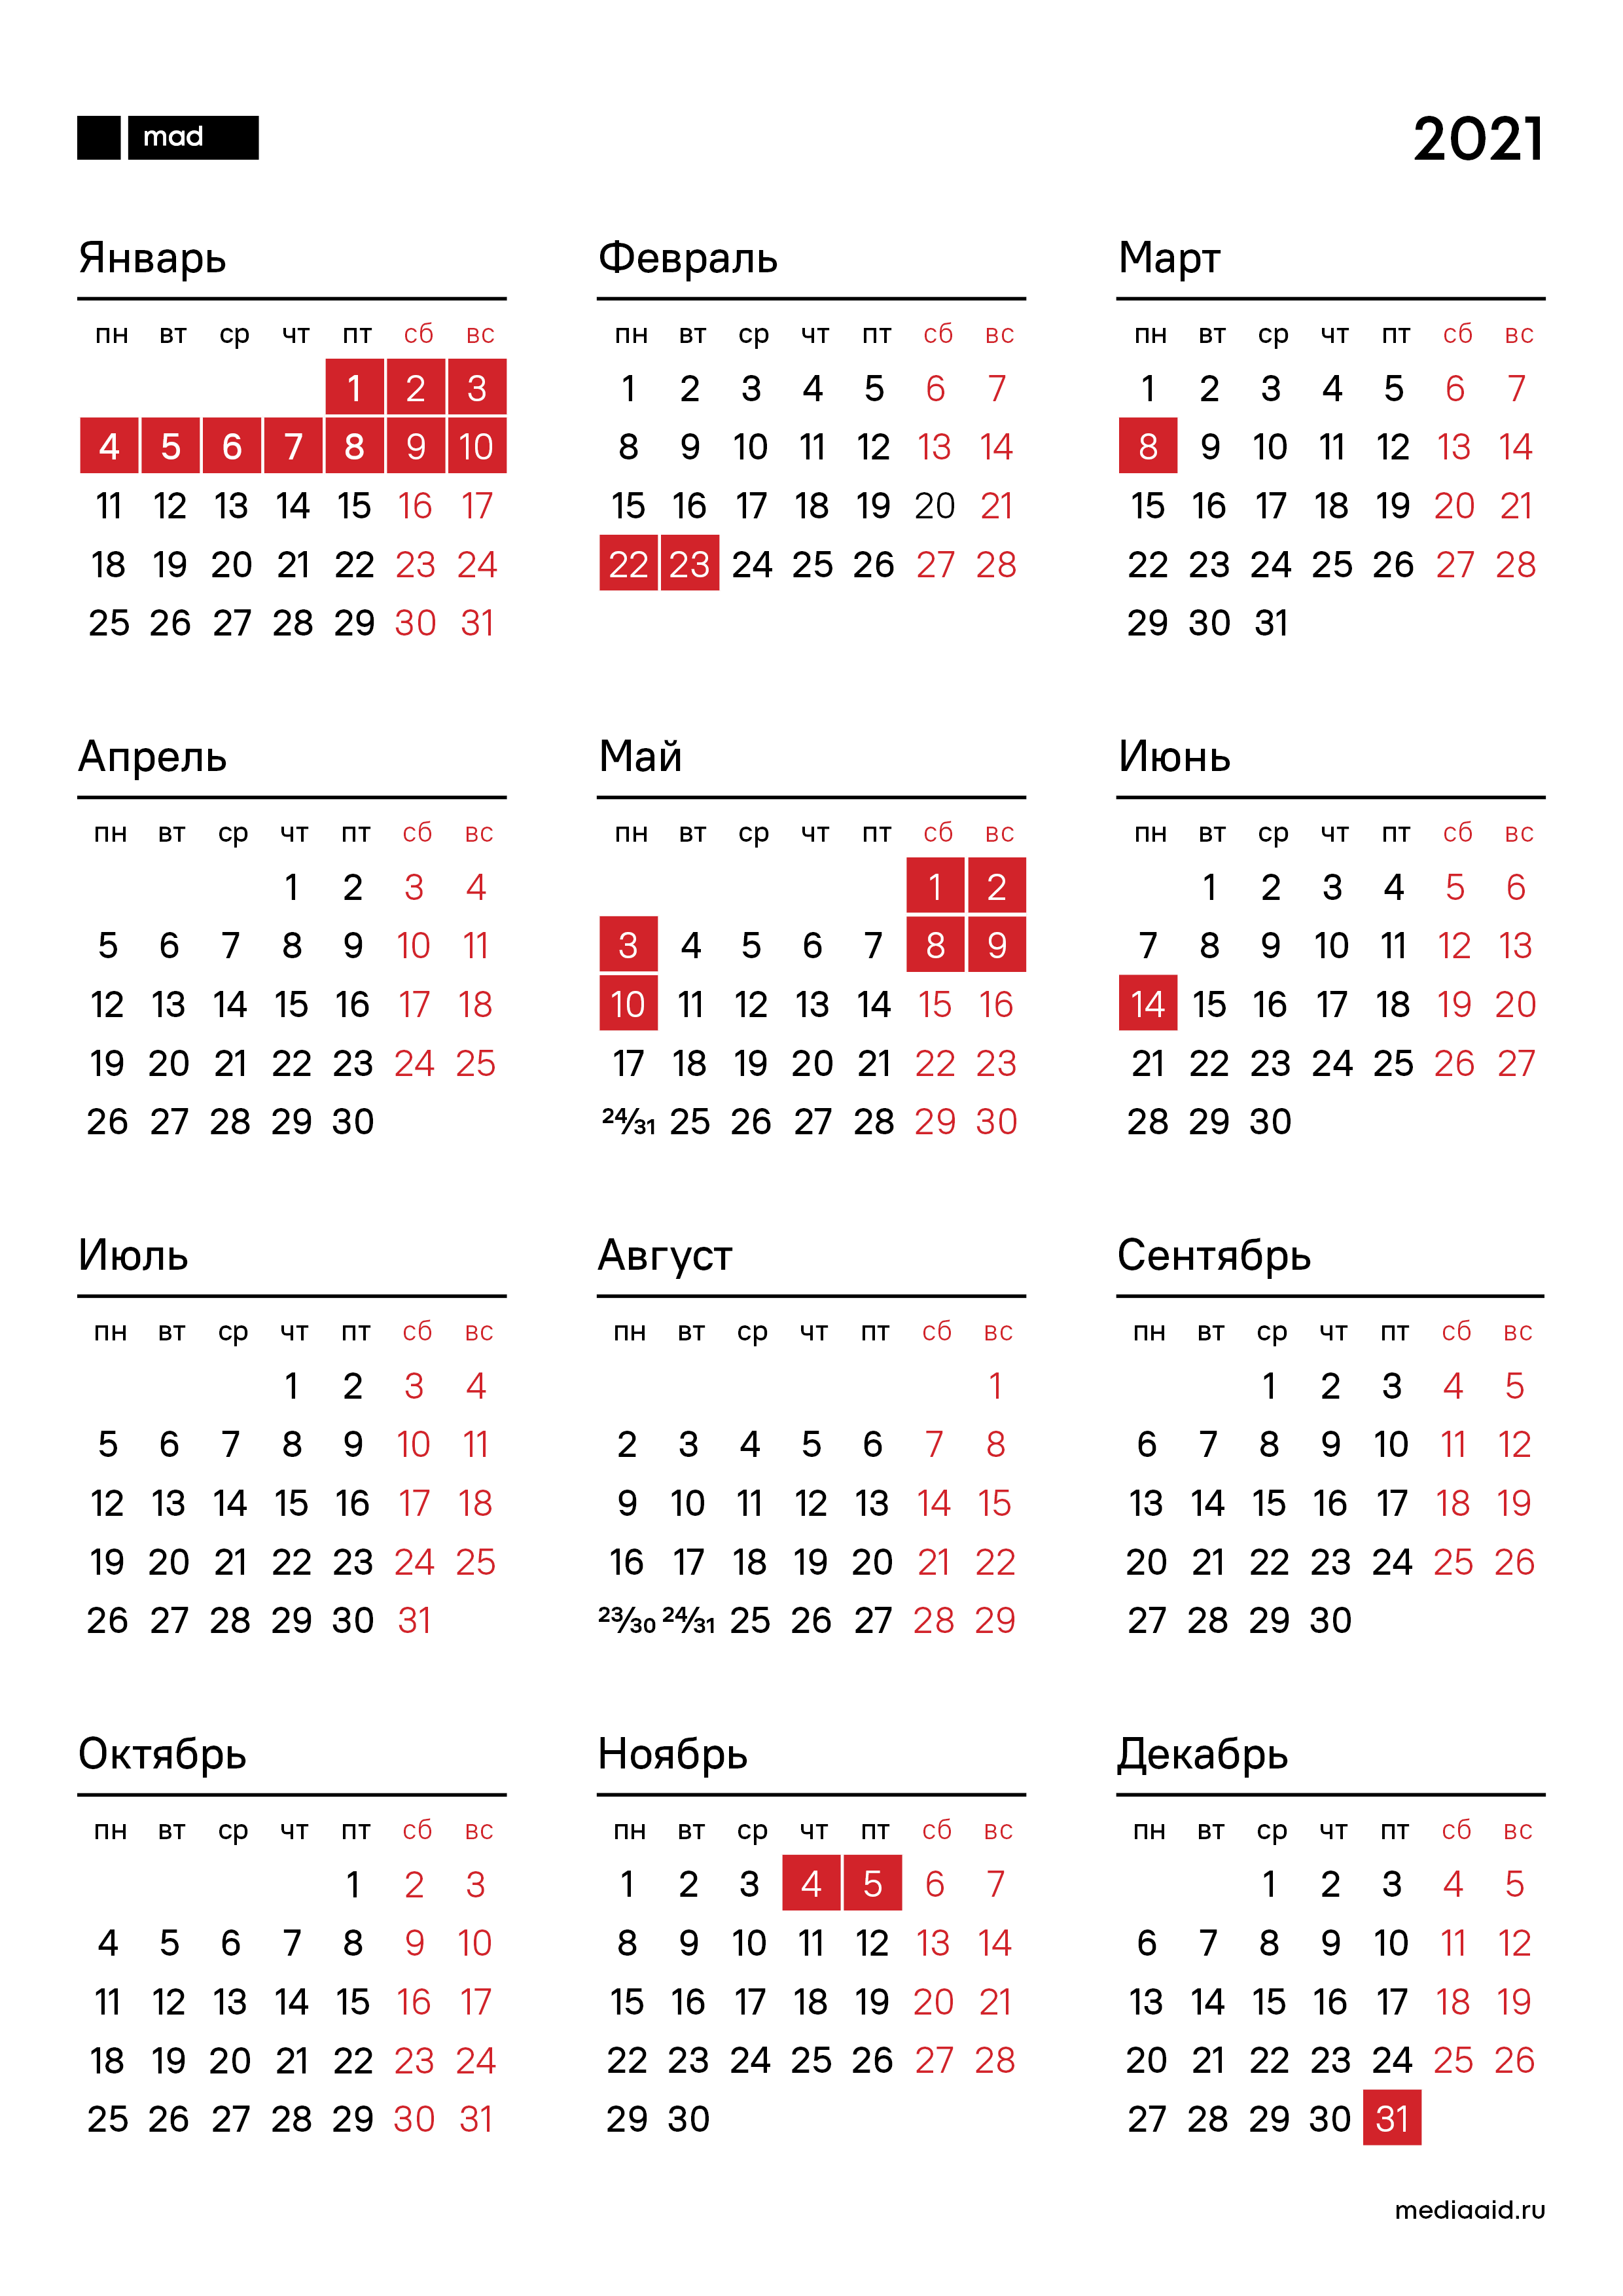 Скачать Календарь С Голыми На 2021 Год